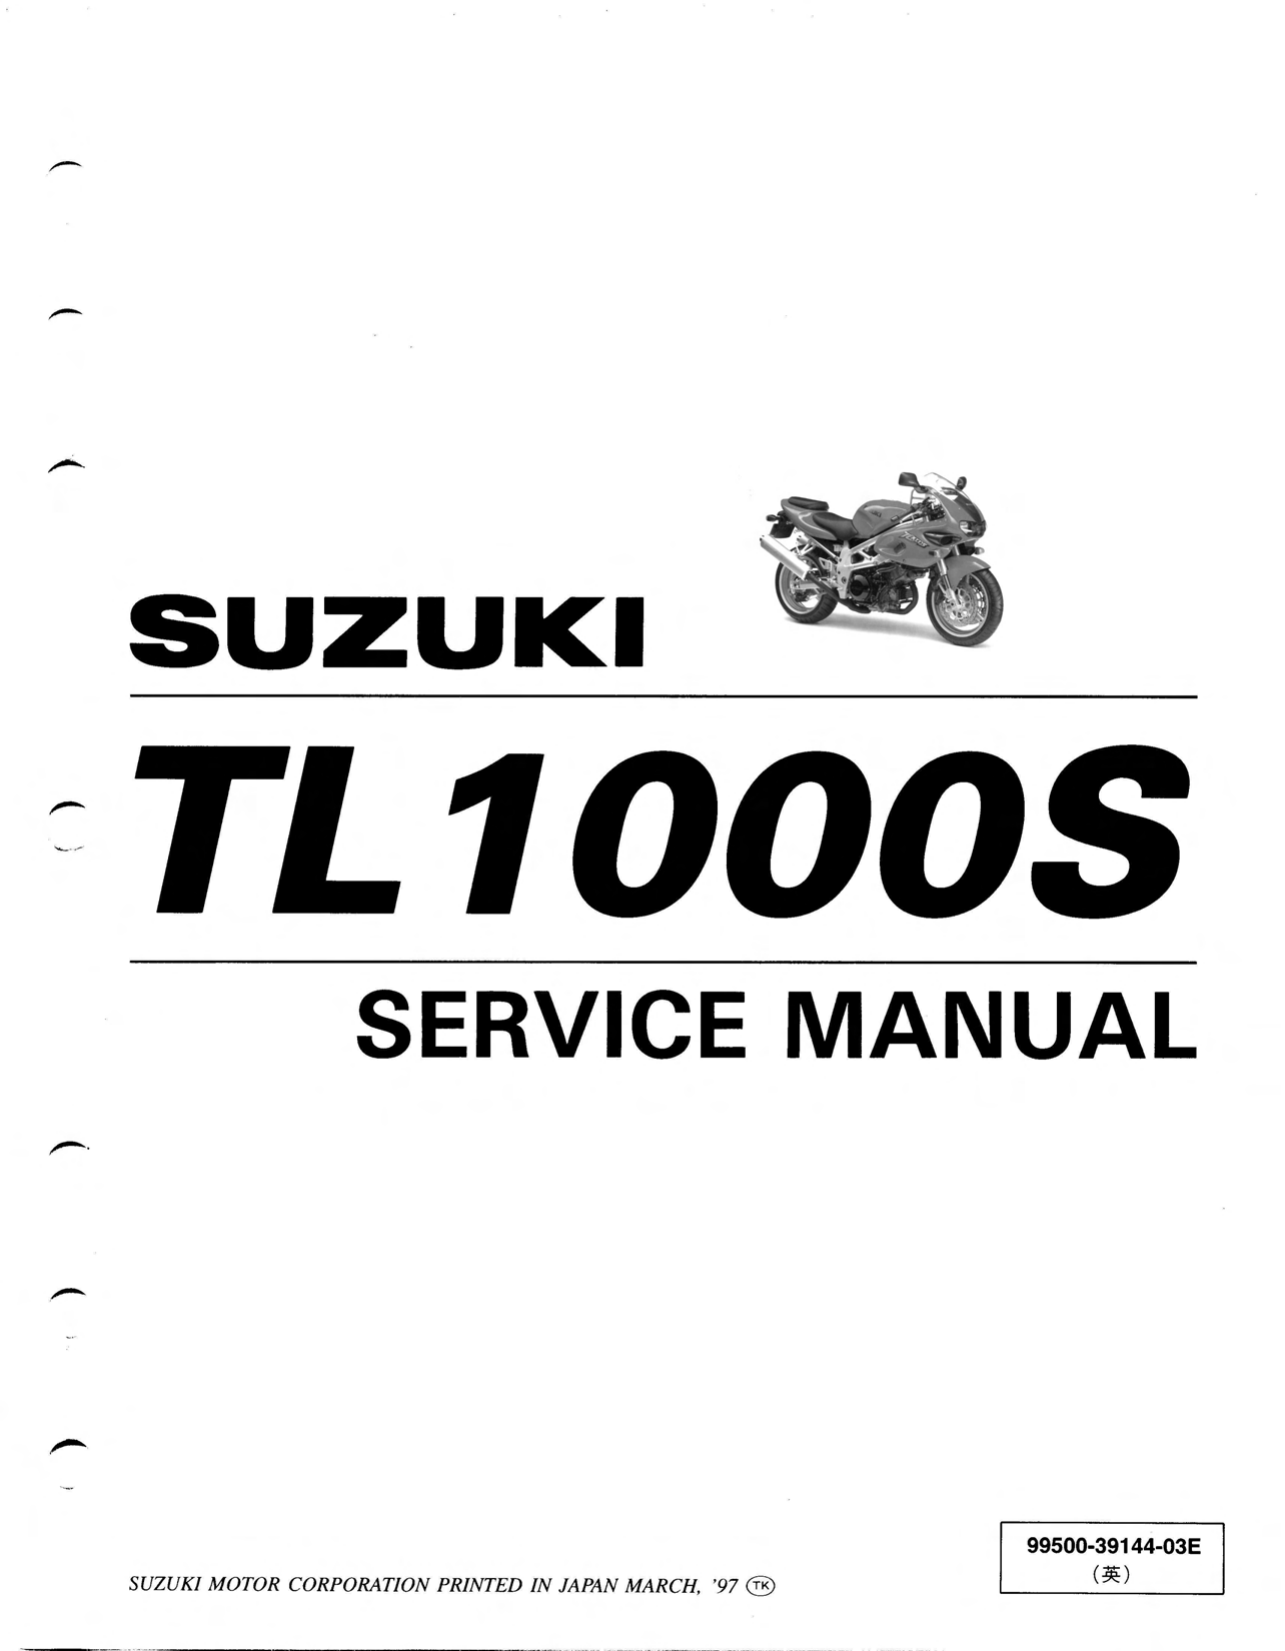 1997-2001 Suzuki TL1000s manual repair and service manual Preview image 6